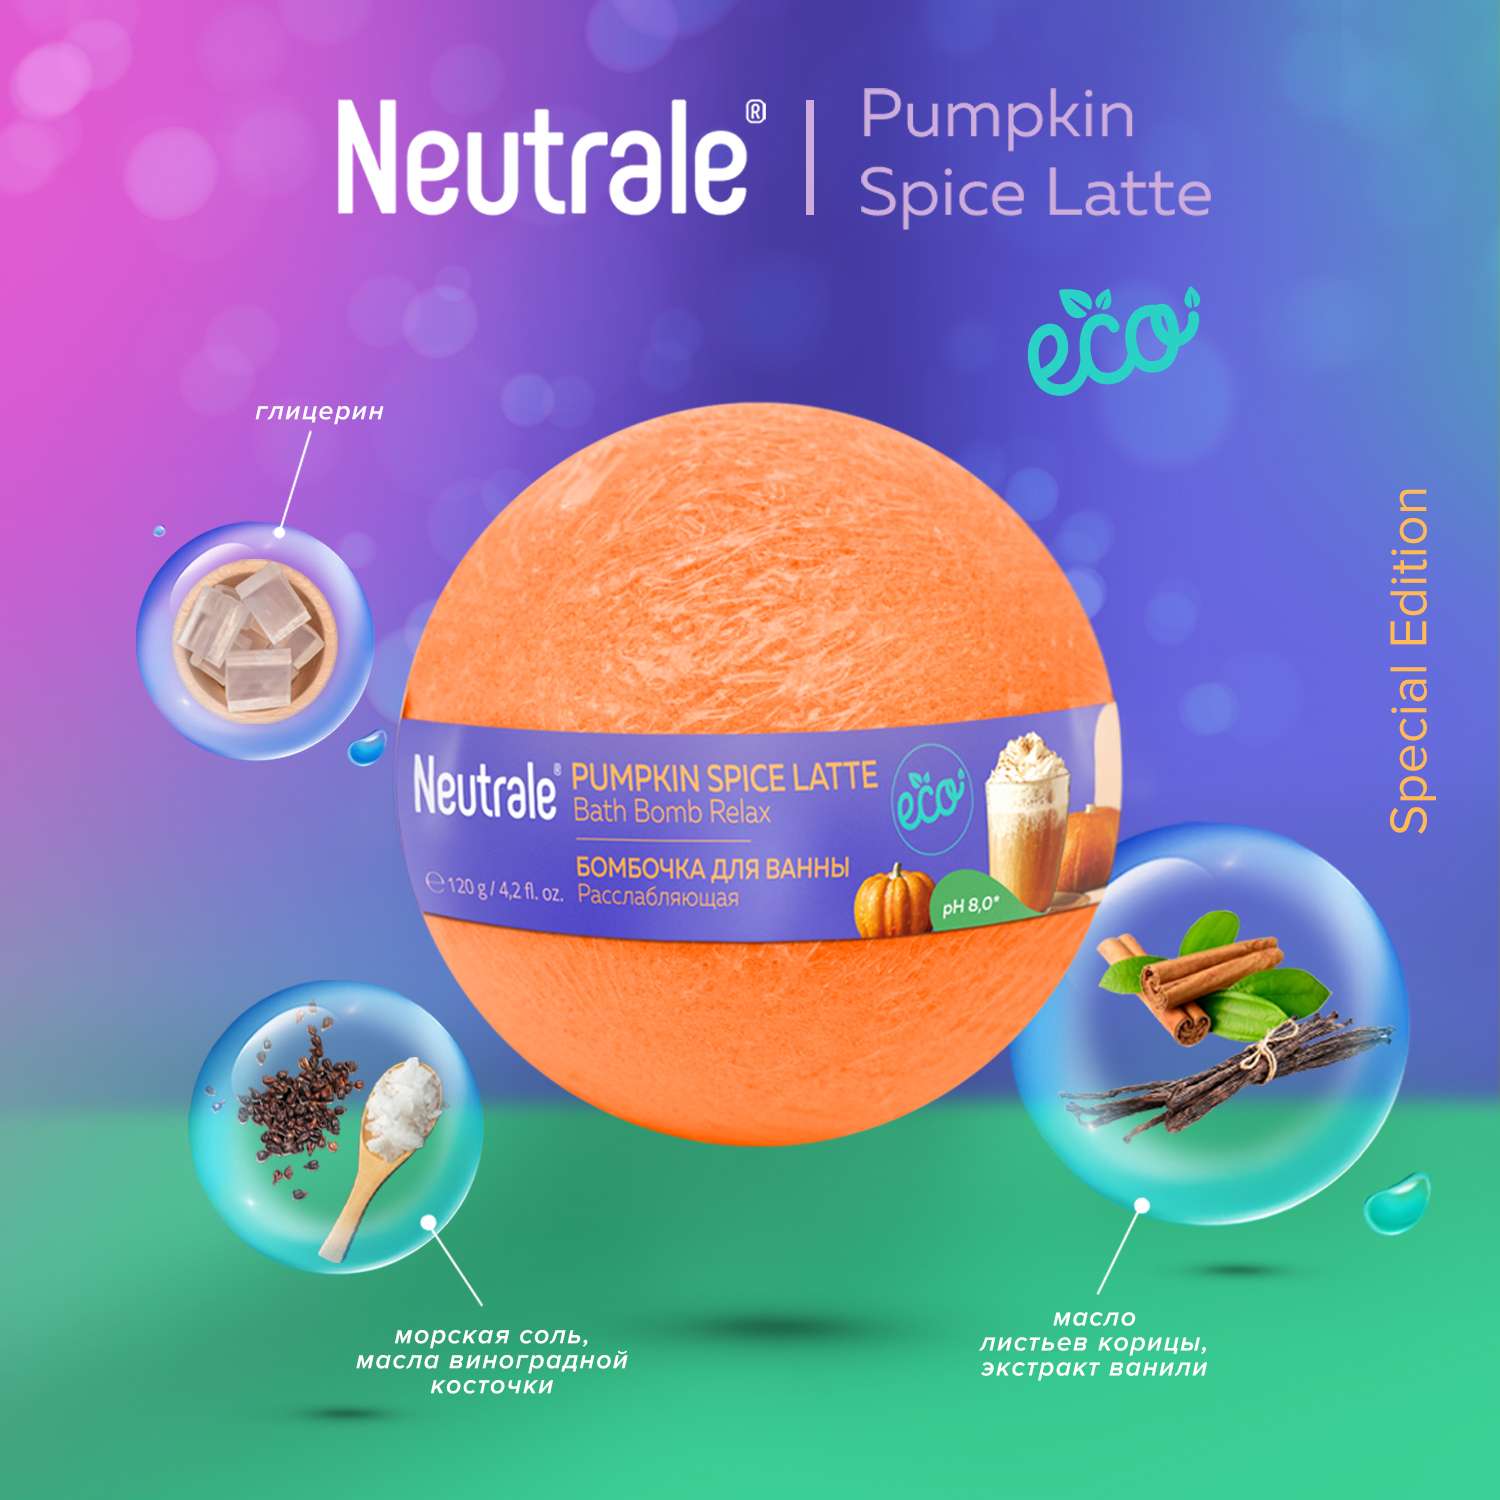 Бомбочка для ванны Neutrale расслабляющая Pumpkin spice latte 120г - фото 2